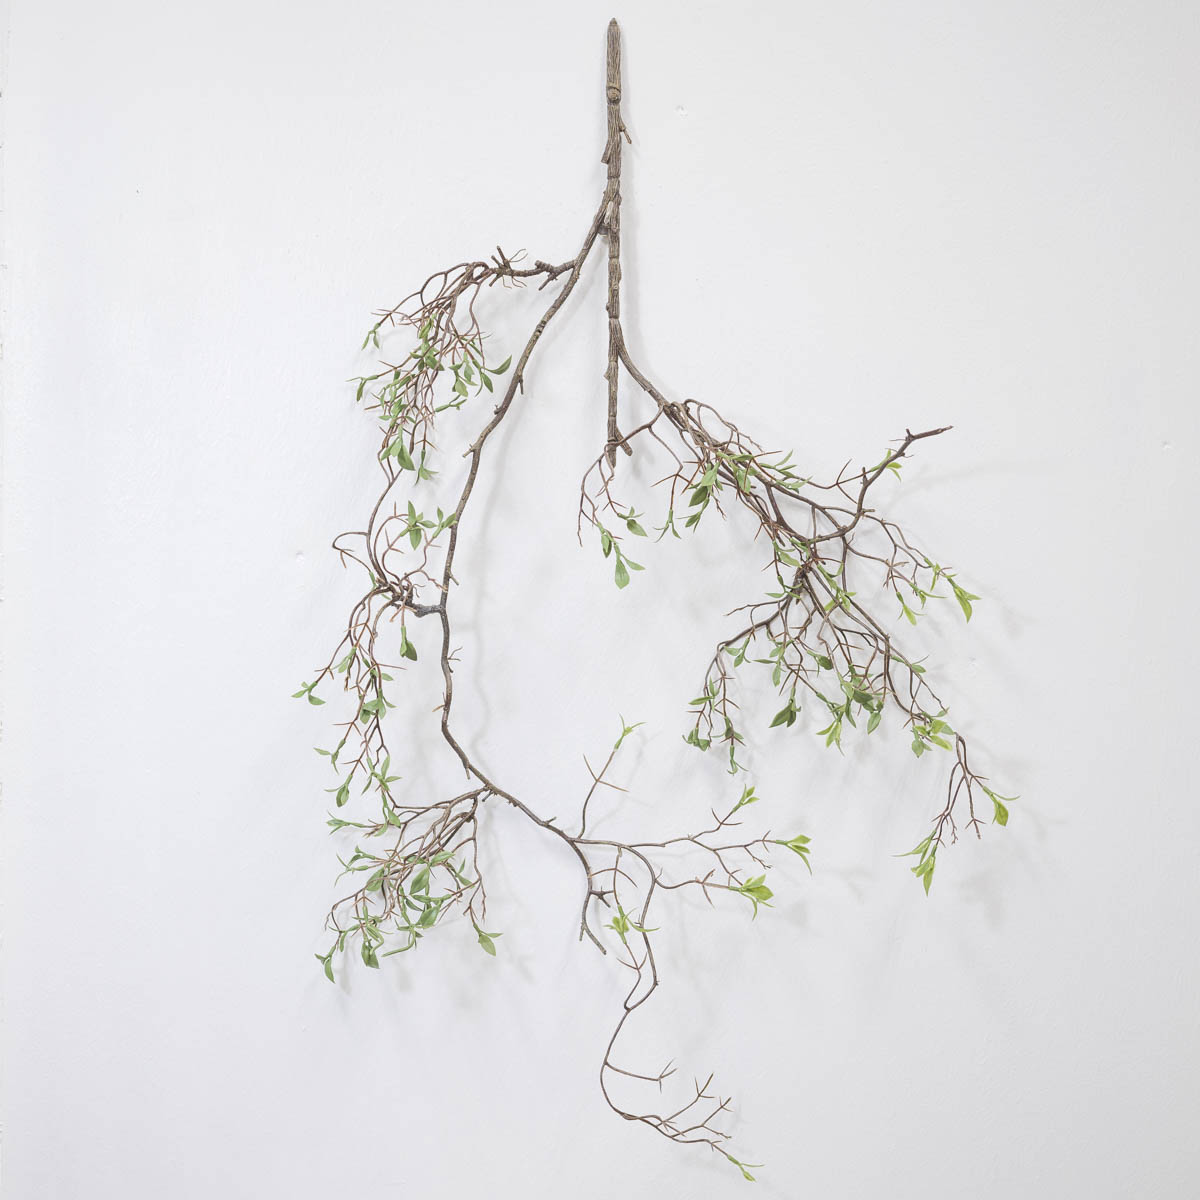 조화식물 버드나무 새순잎 바인 벽에 걸어놓은 사진